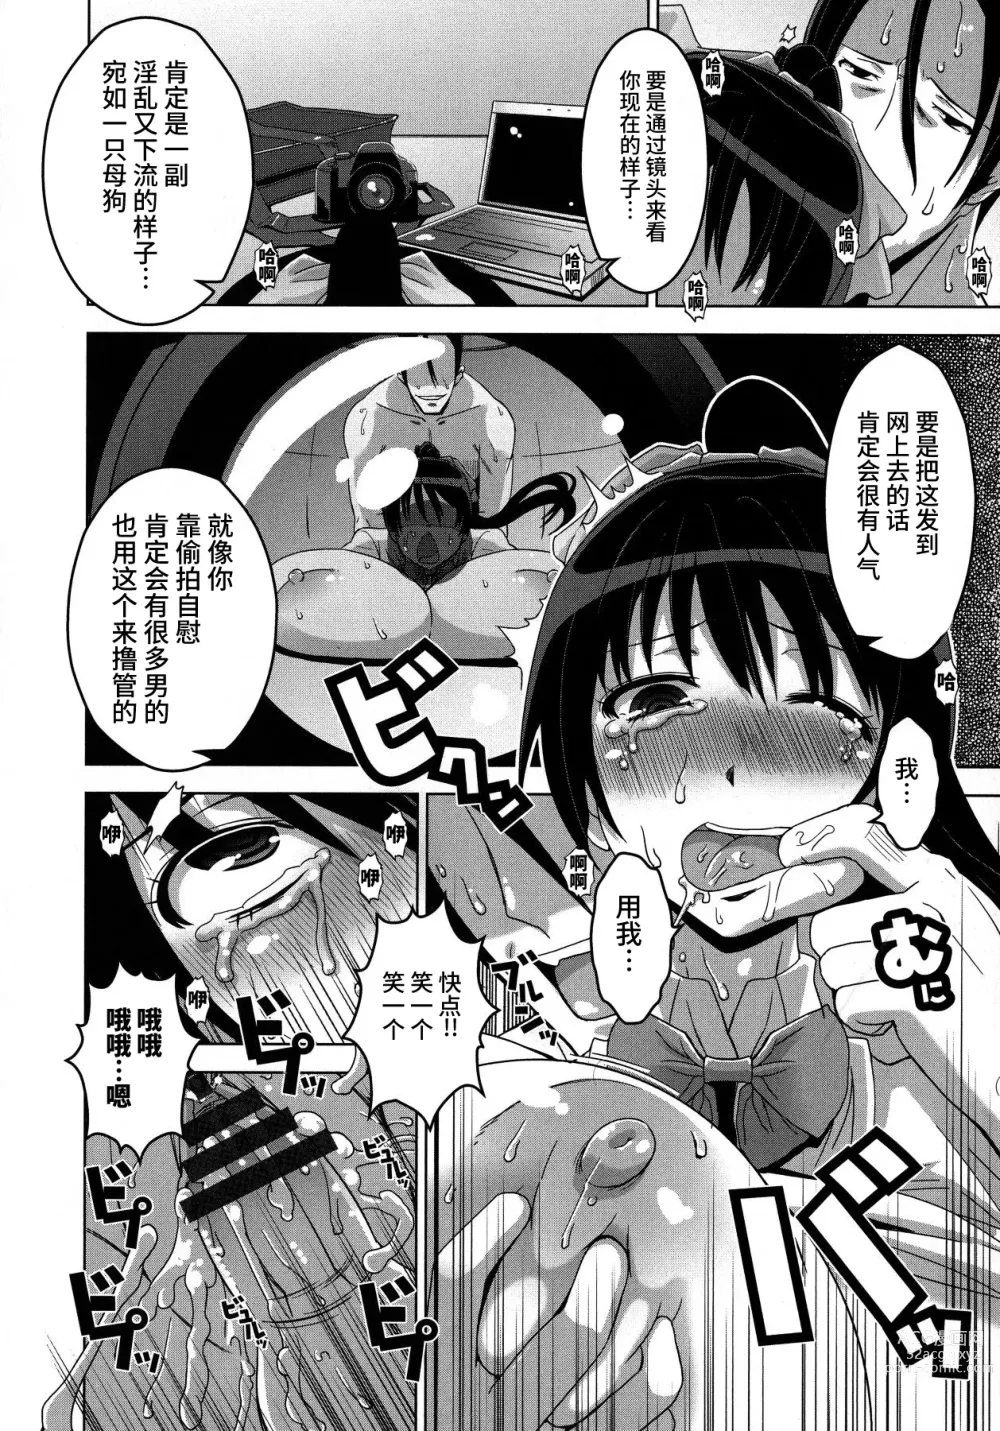 Page 161 of manga Chichiniku no Rakuin Bakunyuu ni kizamareta Etsuraku